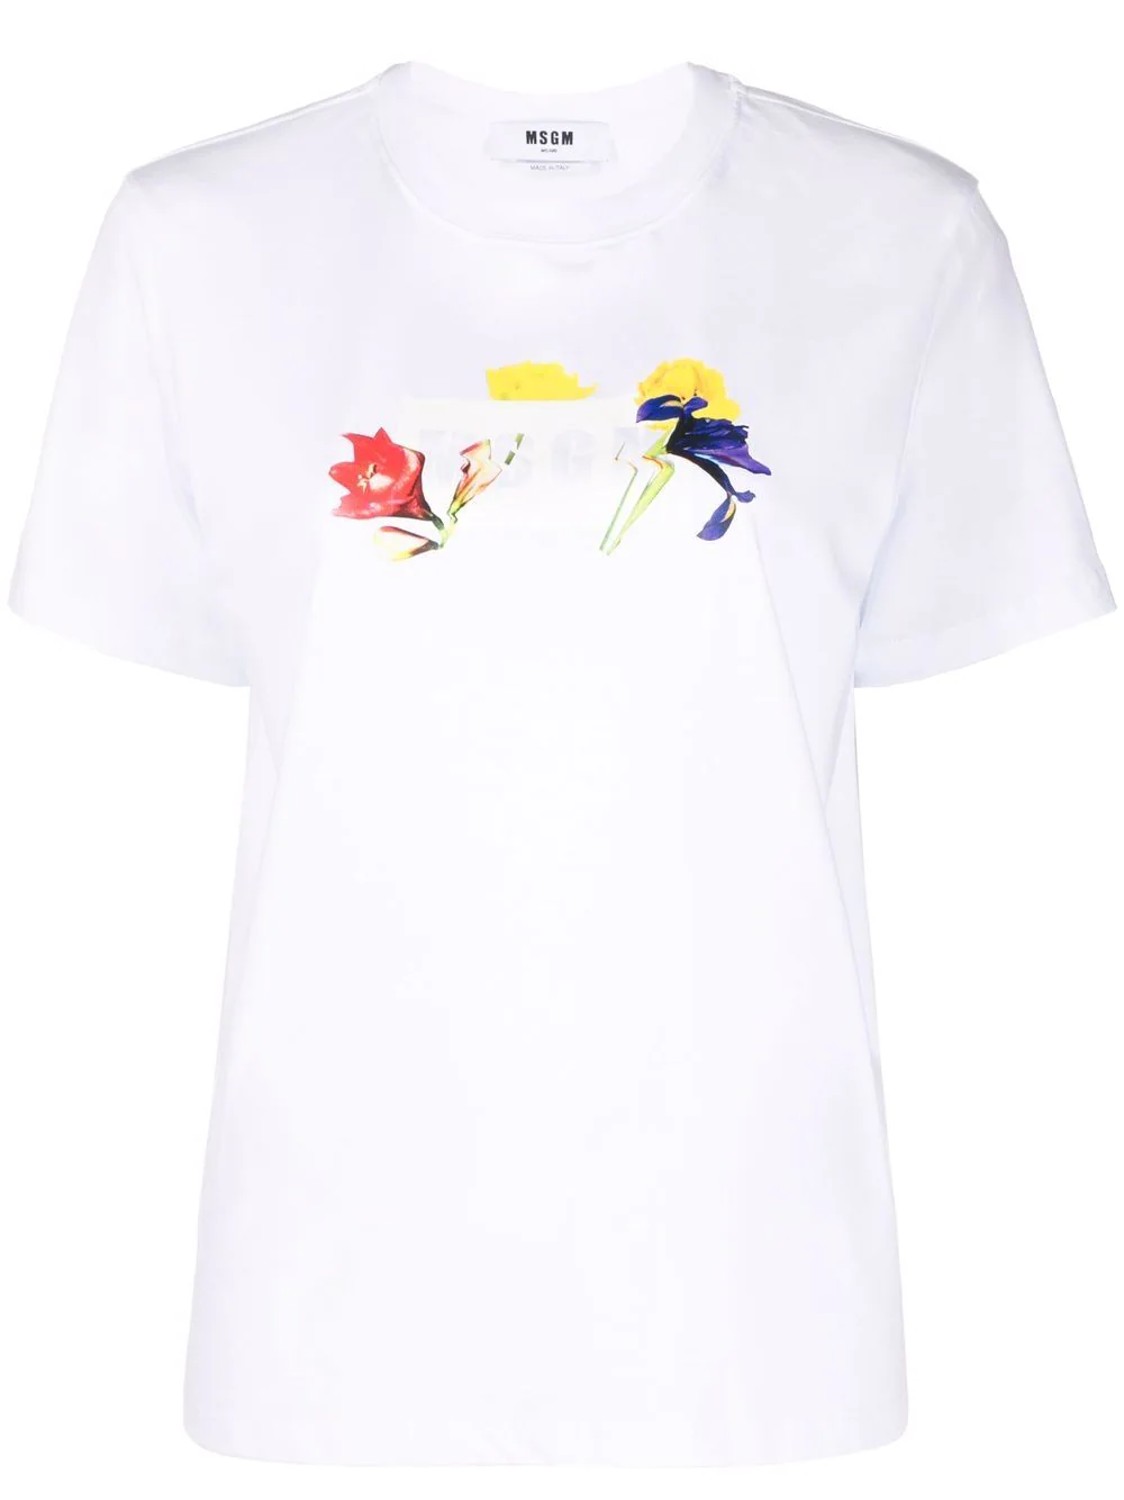 shop MSGM Saldi T-shirts: T-shirts MSGM, manica corta, girocollo, fit regolare, logo disegnato frontale.

Composizione: 100% cotone. number 2290